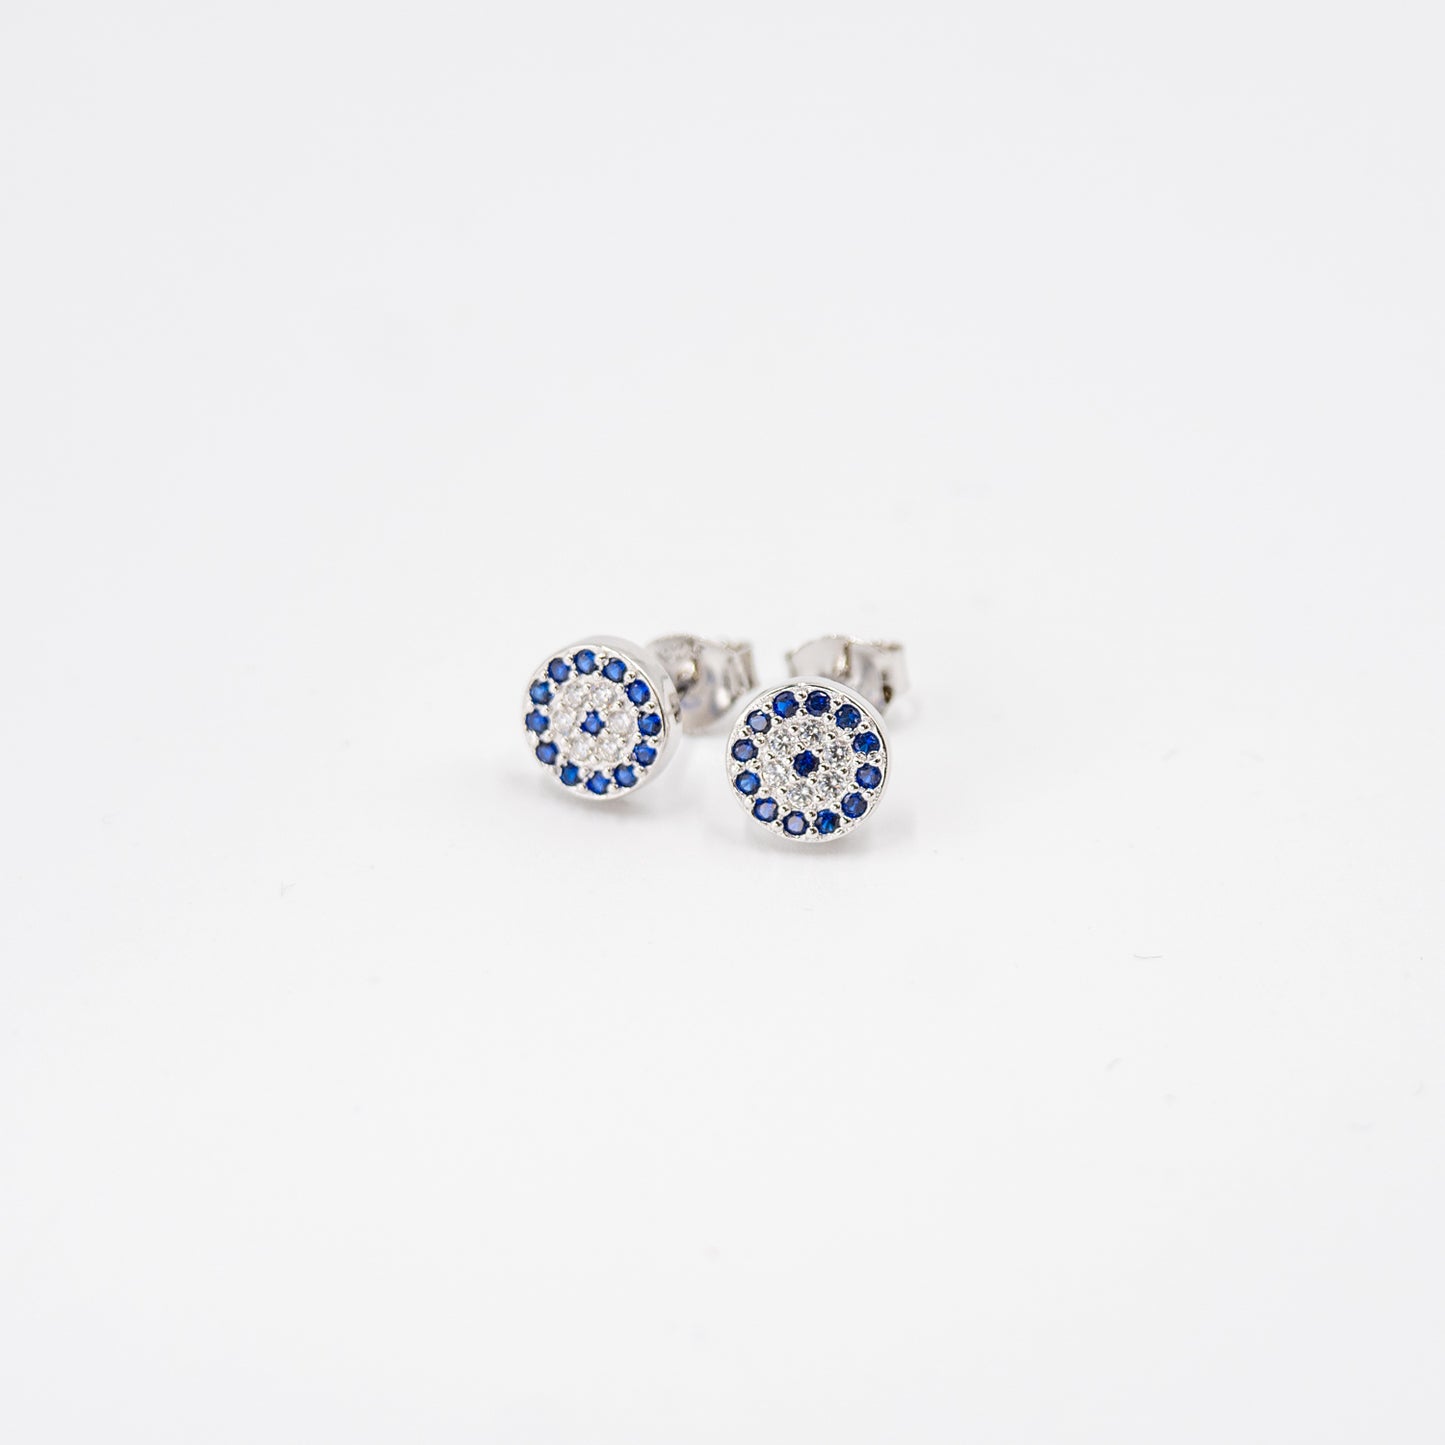 DK-925-154 -EYE earrings